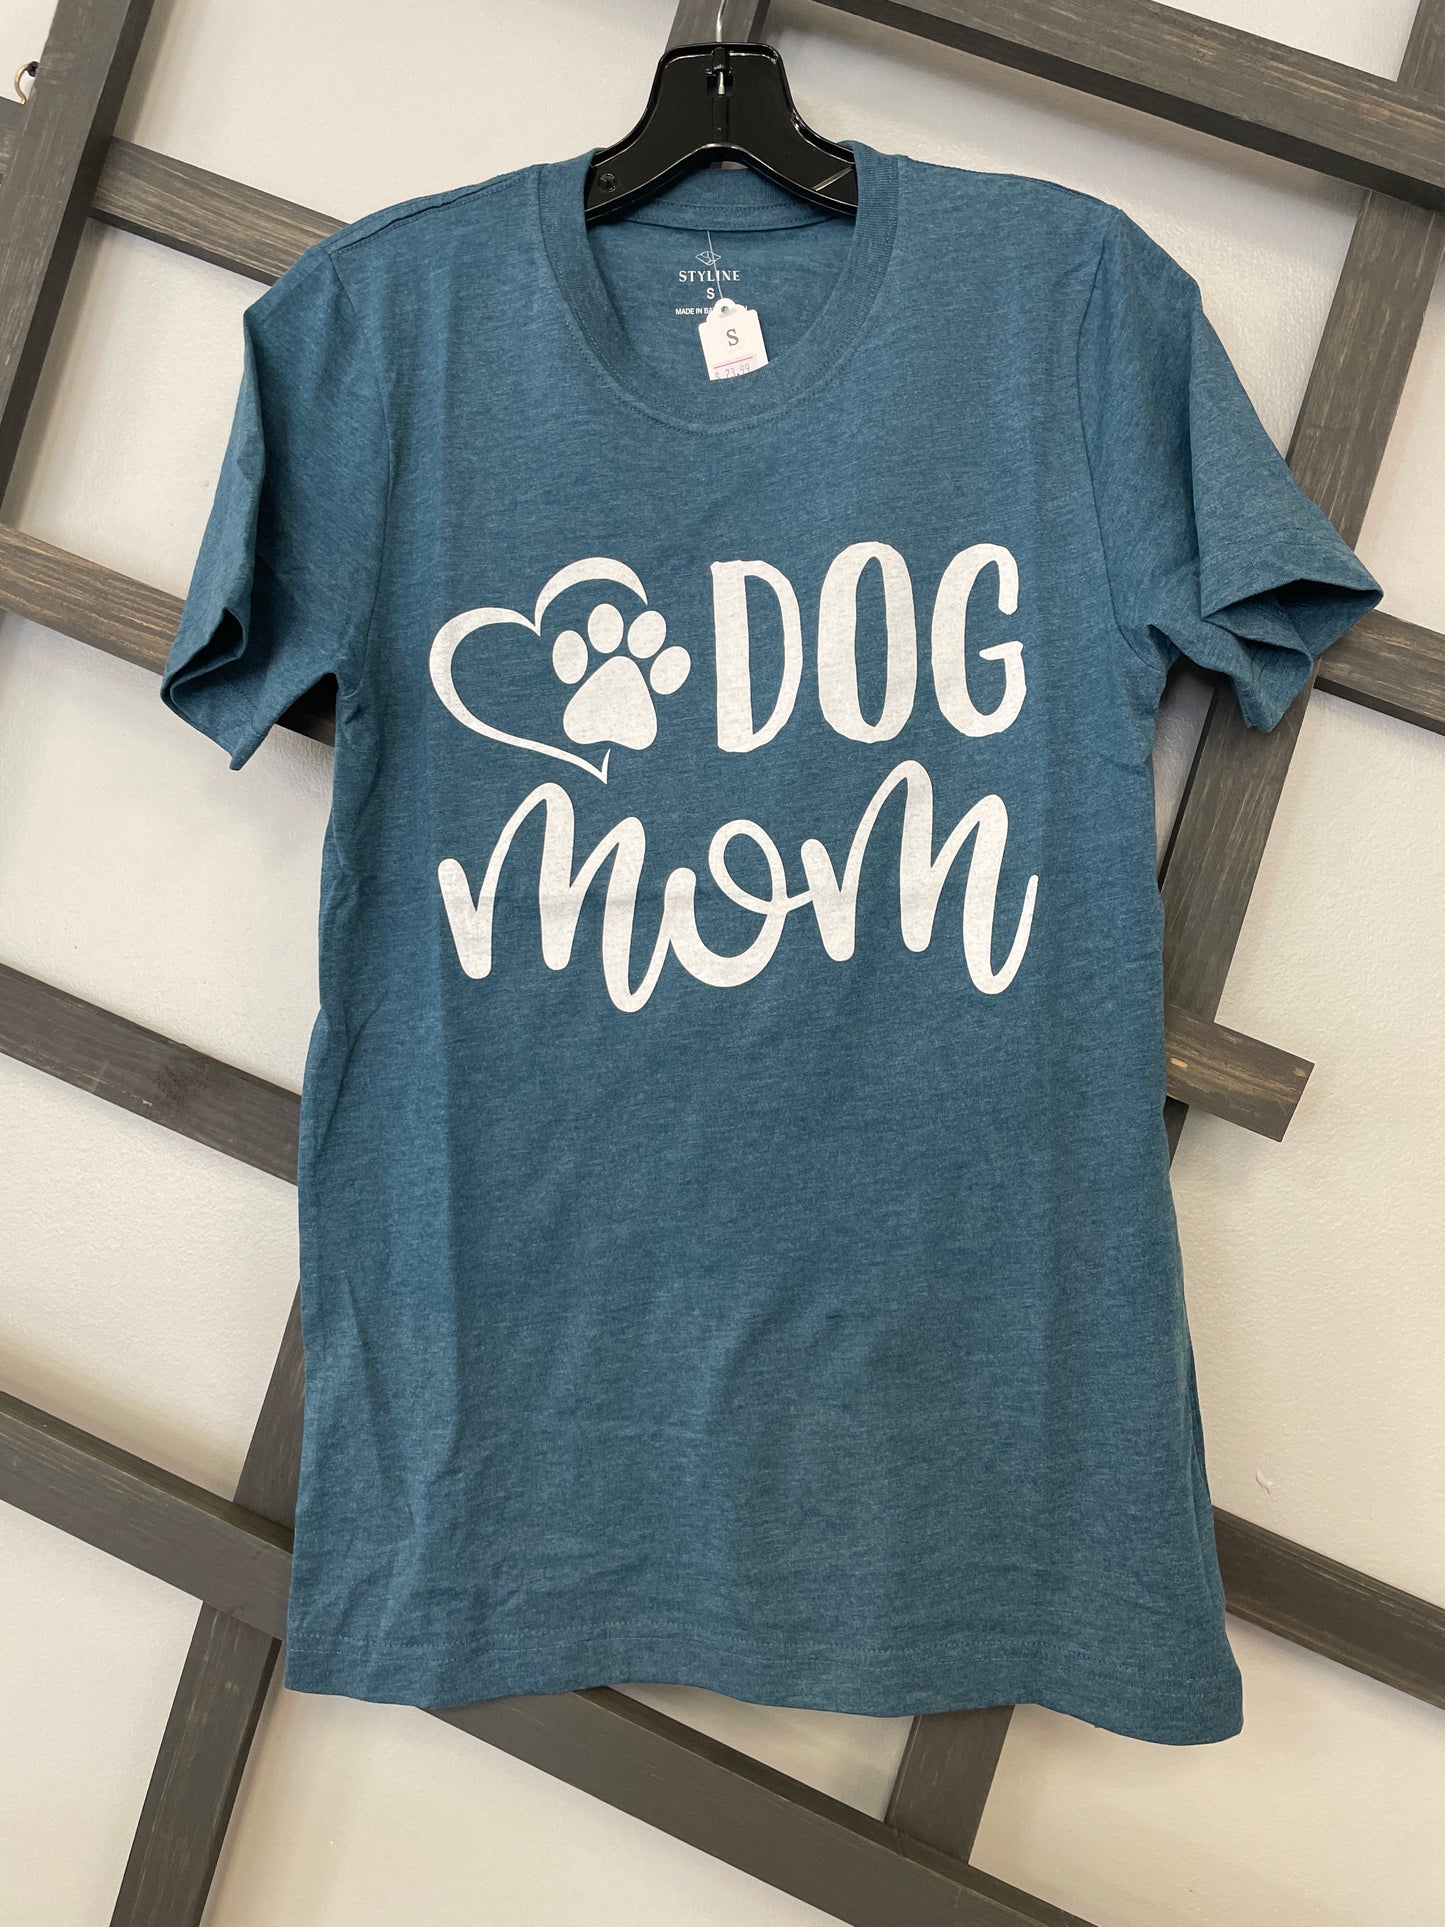 Dog Mom Heart Tee